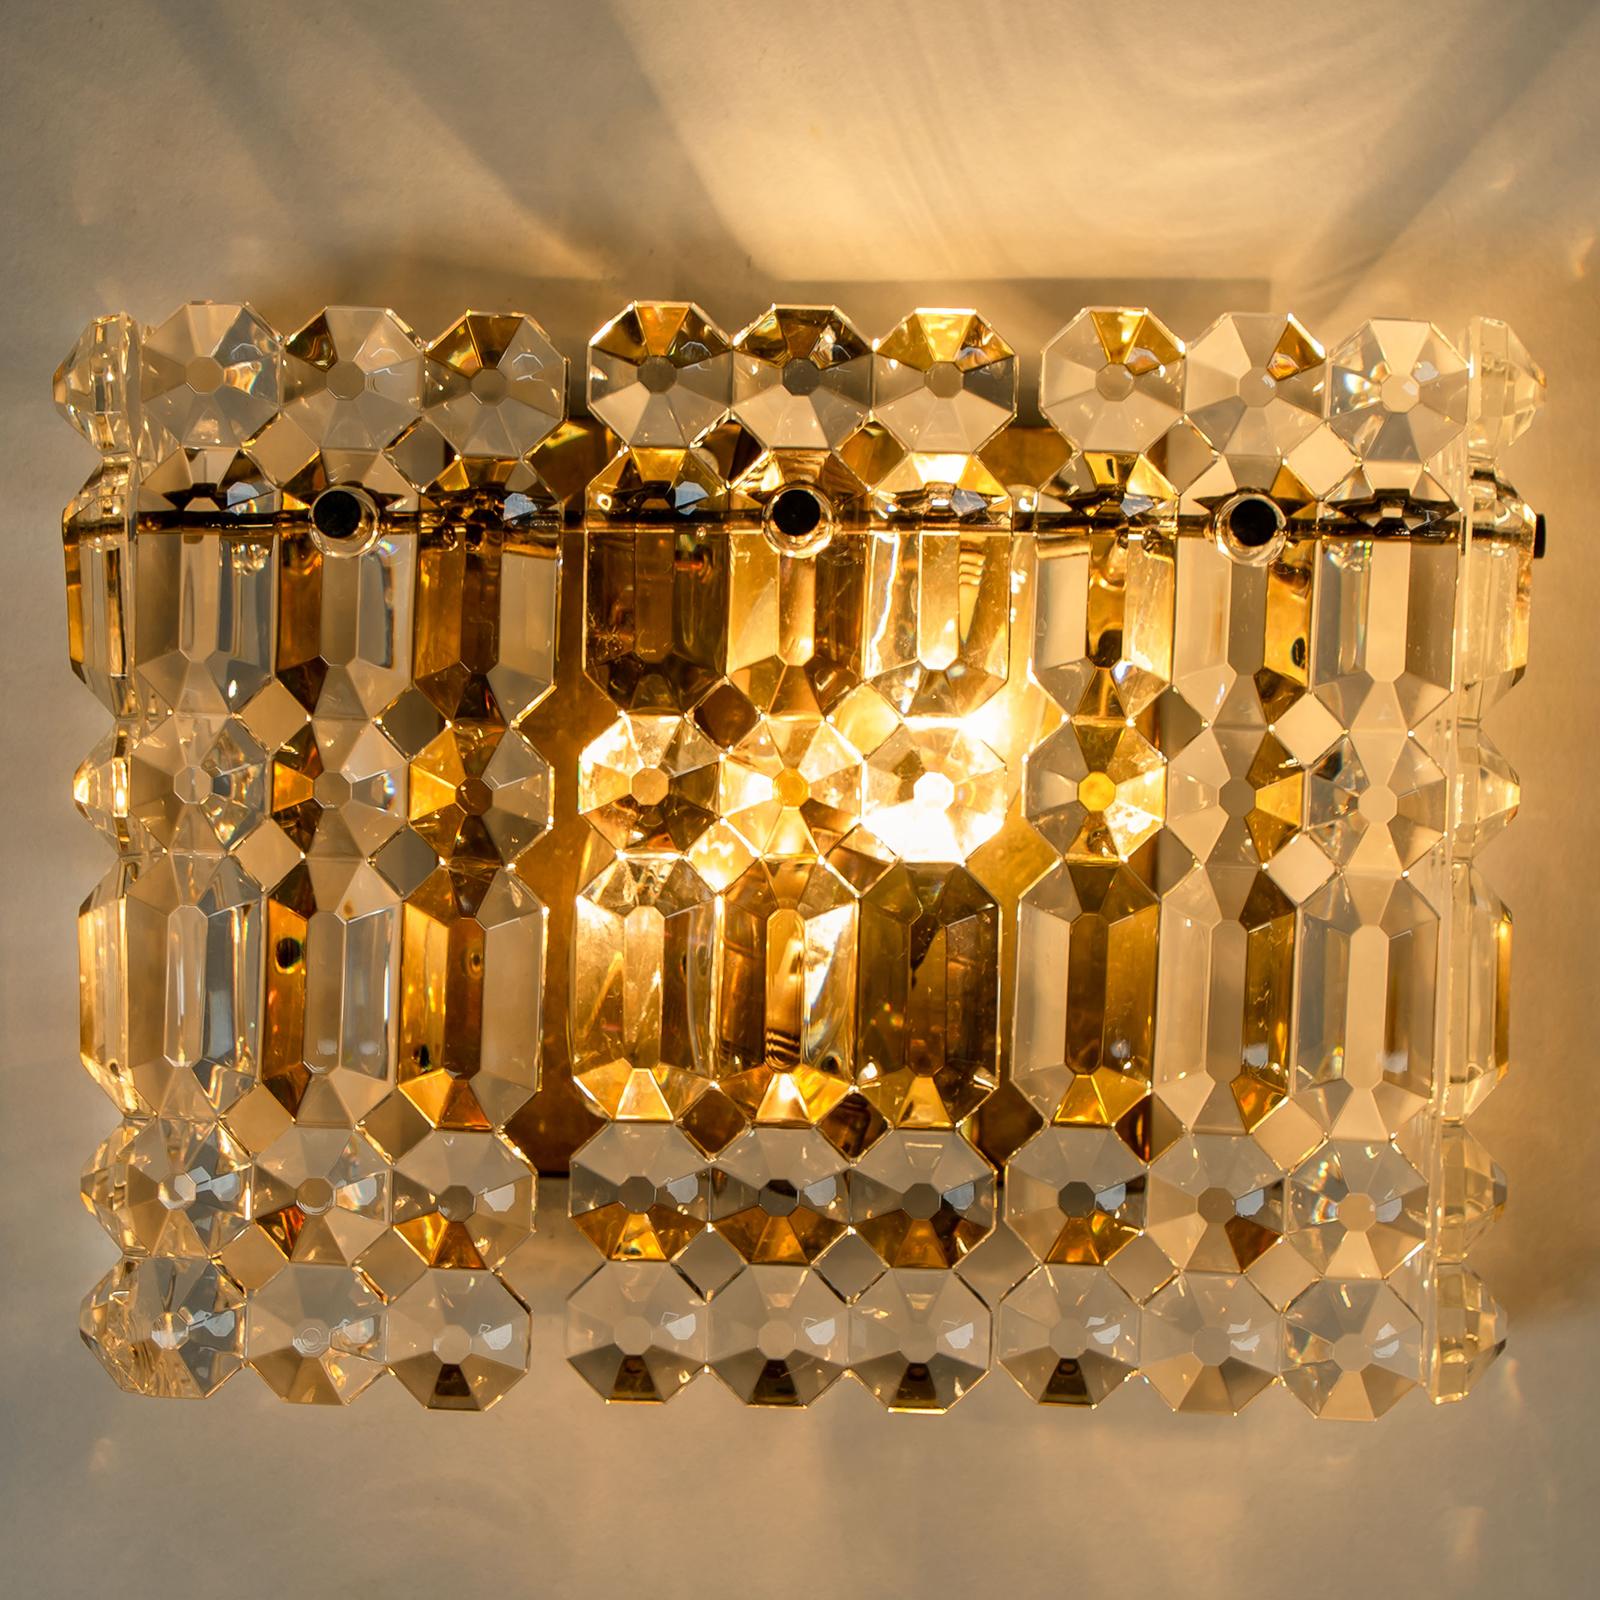 Une luxueuse paire de cadres plaqués or et d'épaisses appliques en cristal du célèbre fabricant Kinkeldey. Deux sources de lumière. Des luminaires très élégants, qui s'adaptent à toutes les époques de décoration. Les cristaux sont méticuleusement